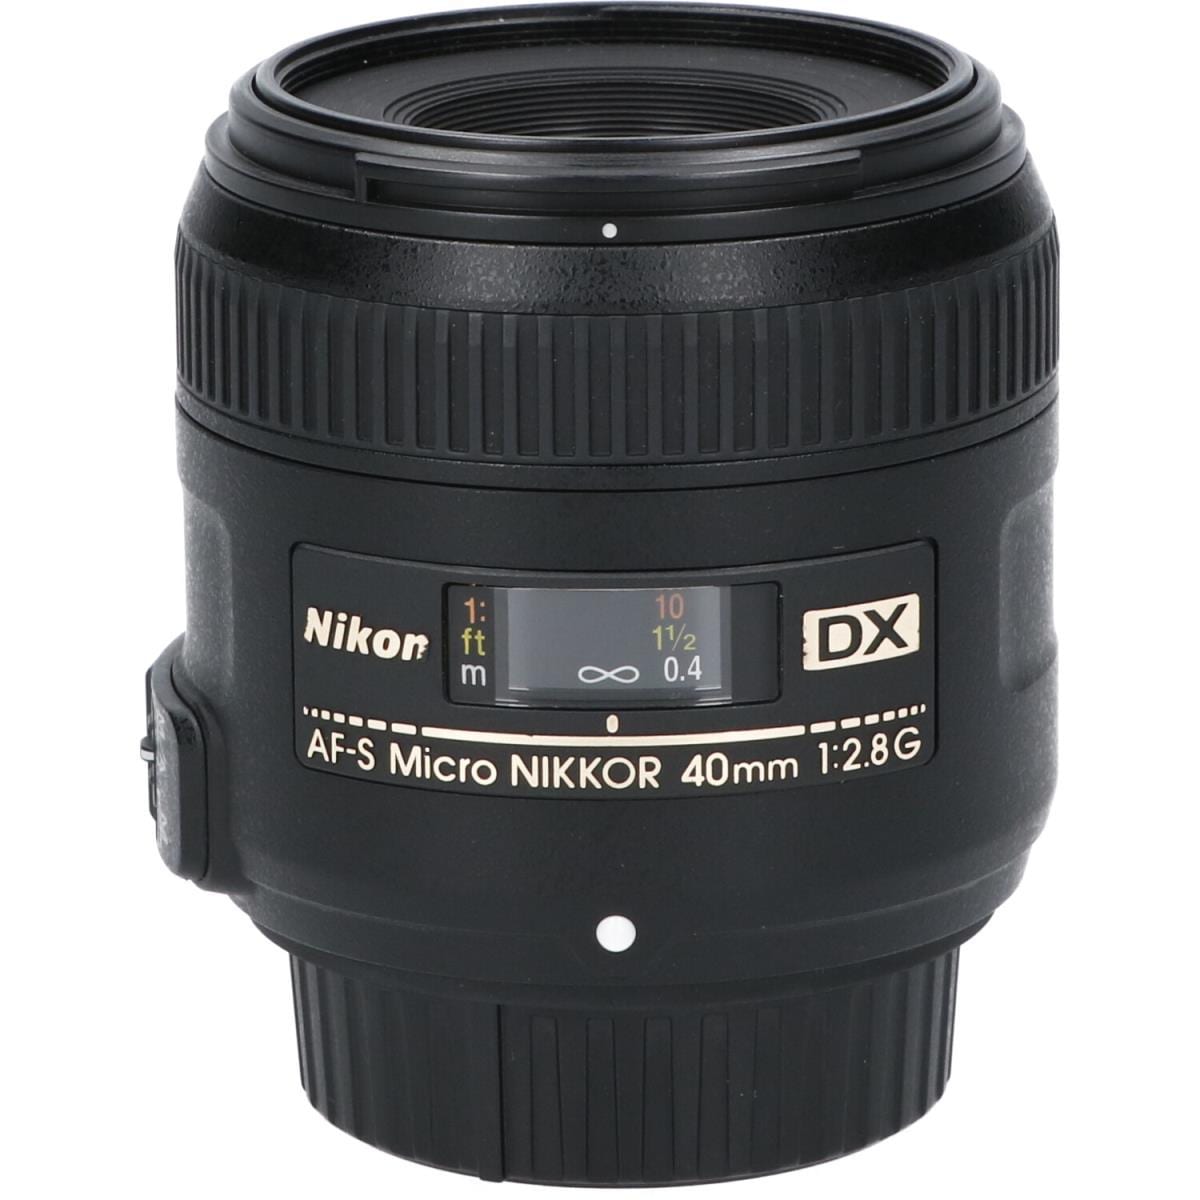 NIKON AF-S DX40mm F2.8G MICRO